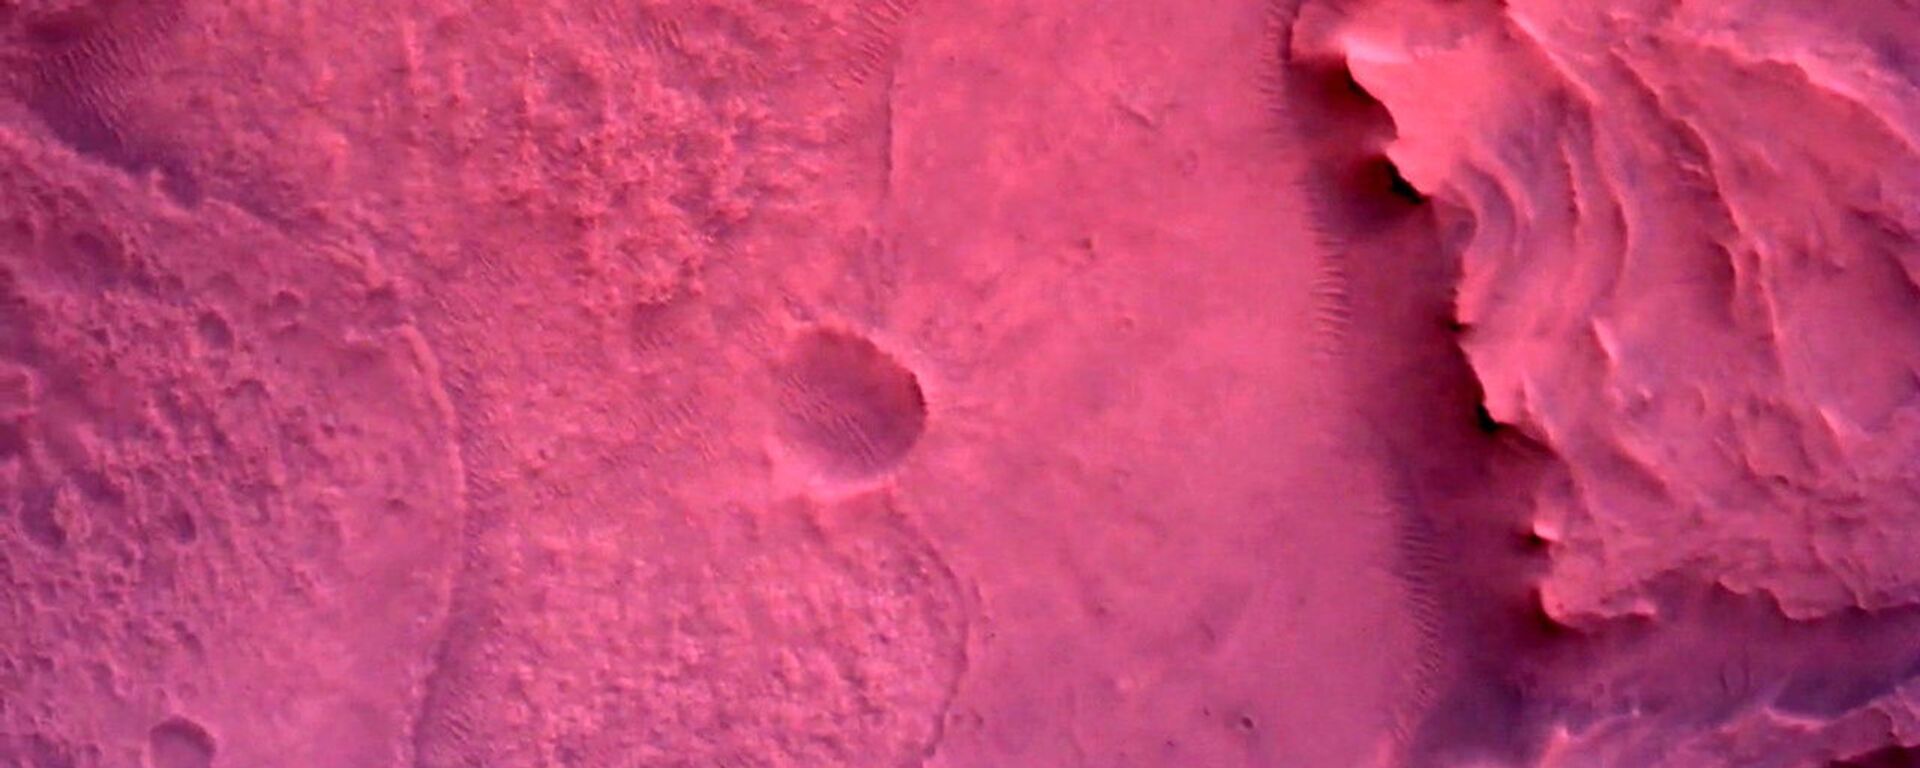 صورة لسطح كوكب المريخ مباشرة أسفل مركبة المركبة المتجولة بيرسيفرانس مارس التابعة لوكالة الفضاء الدولية ناسا، بواسطة كاميرا روفر داون-لوك في صورة تم الحصول عليها في 22 فبراير 2021 - سبوتنيك عربي, 1920, 24.11.2021